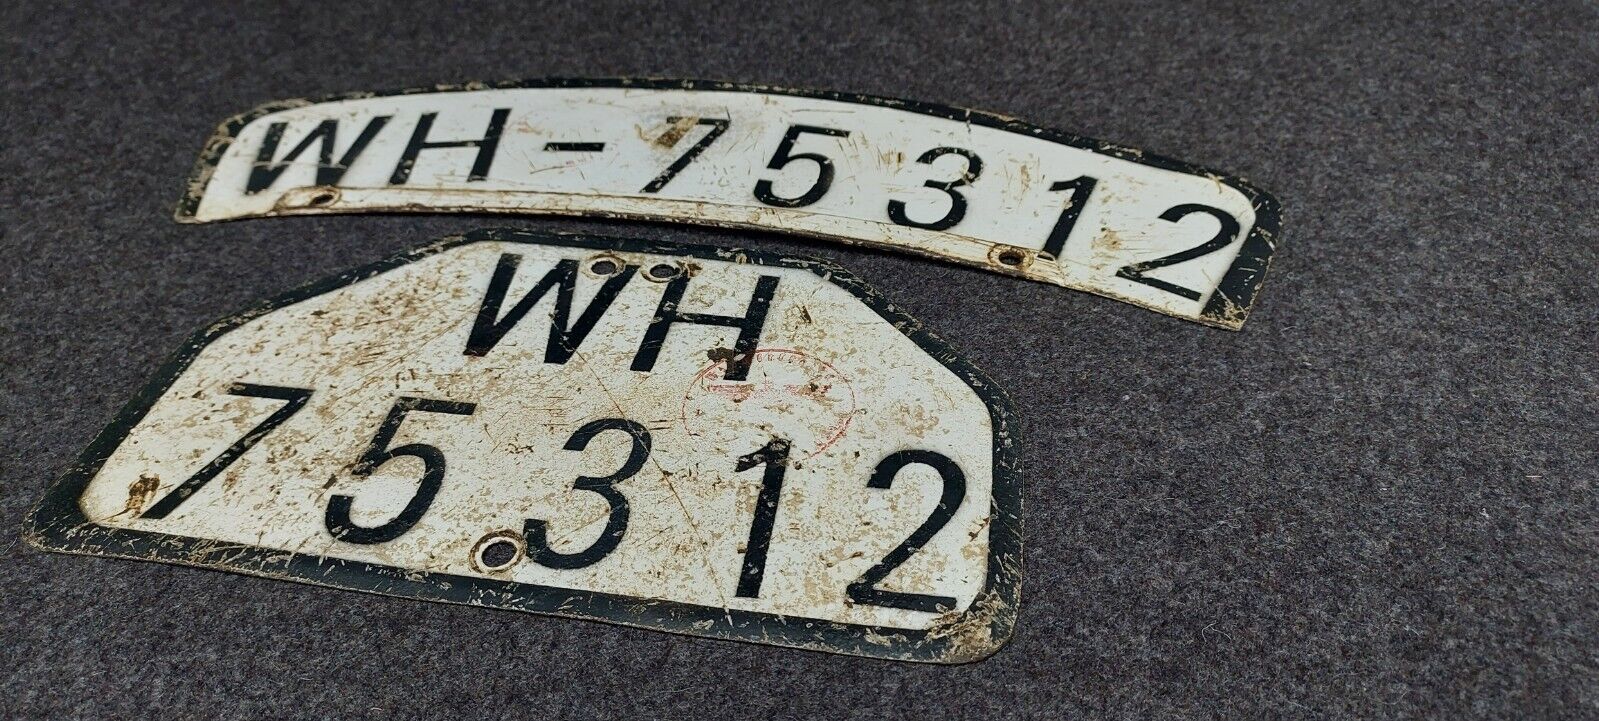 German WW2 Motorcycle License Plate